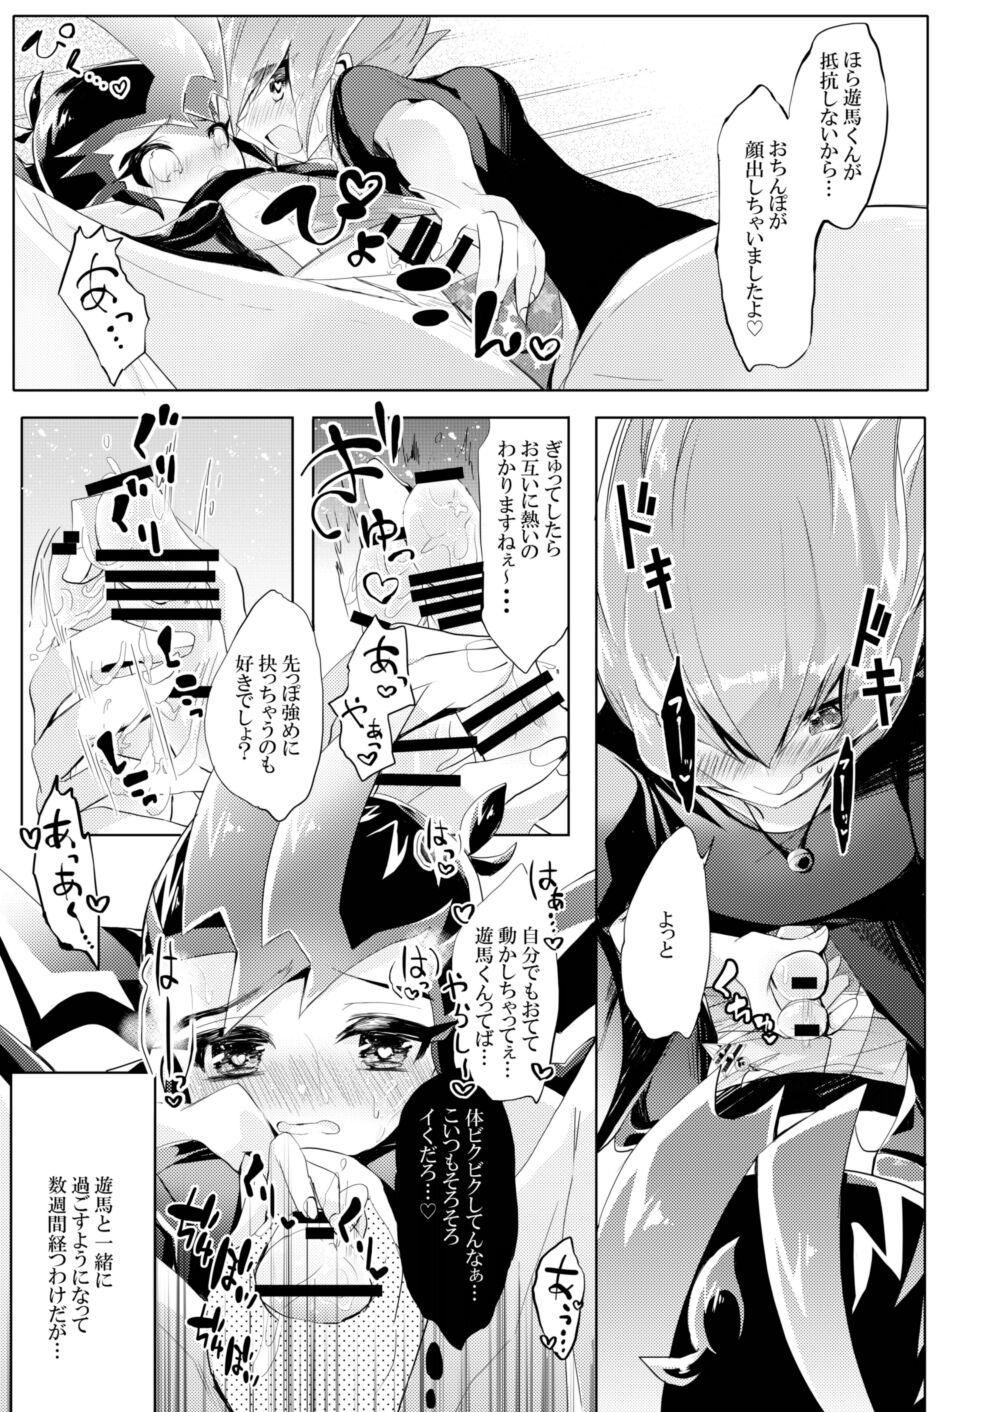 Hymen Hitotsuyanenoshita no koiwazurai - Yu gi oh zexal Collar - Page 5